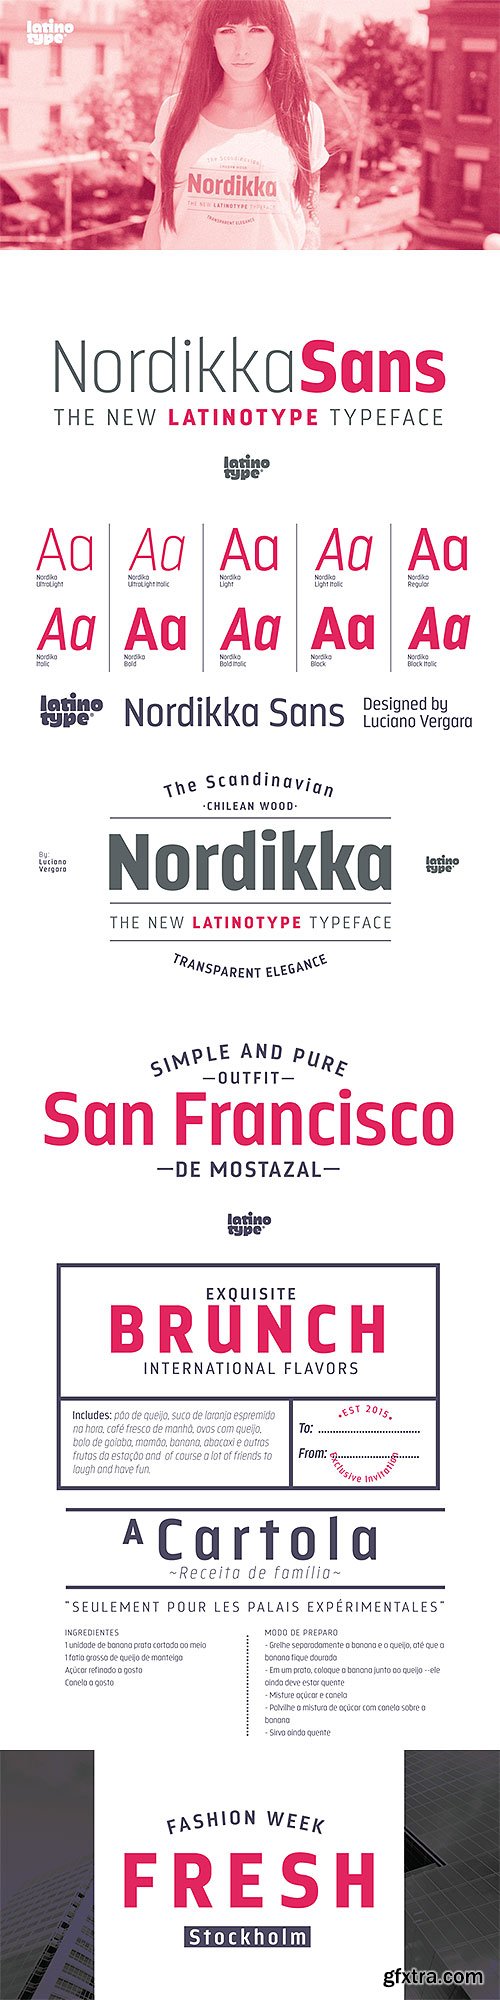 Nordikka - New Pure Sans Typeface 10xOTF $139